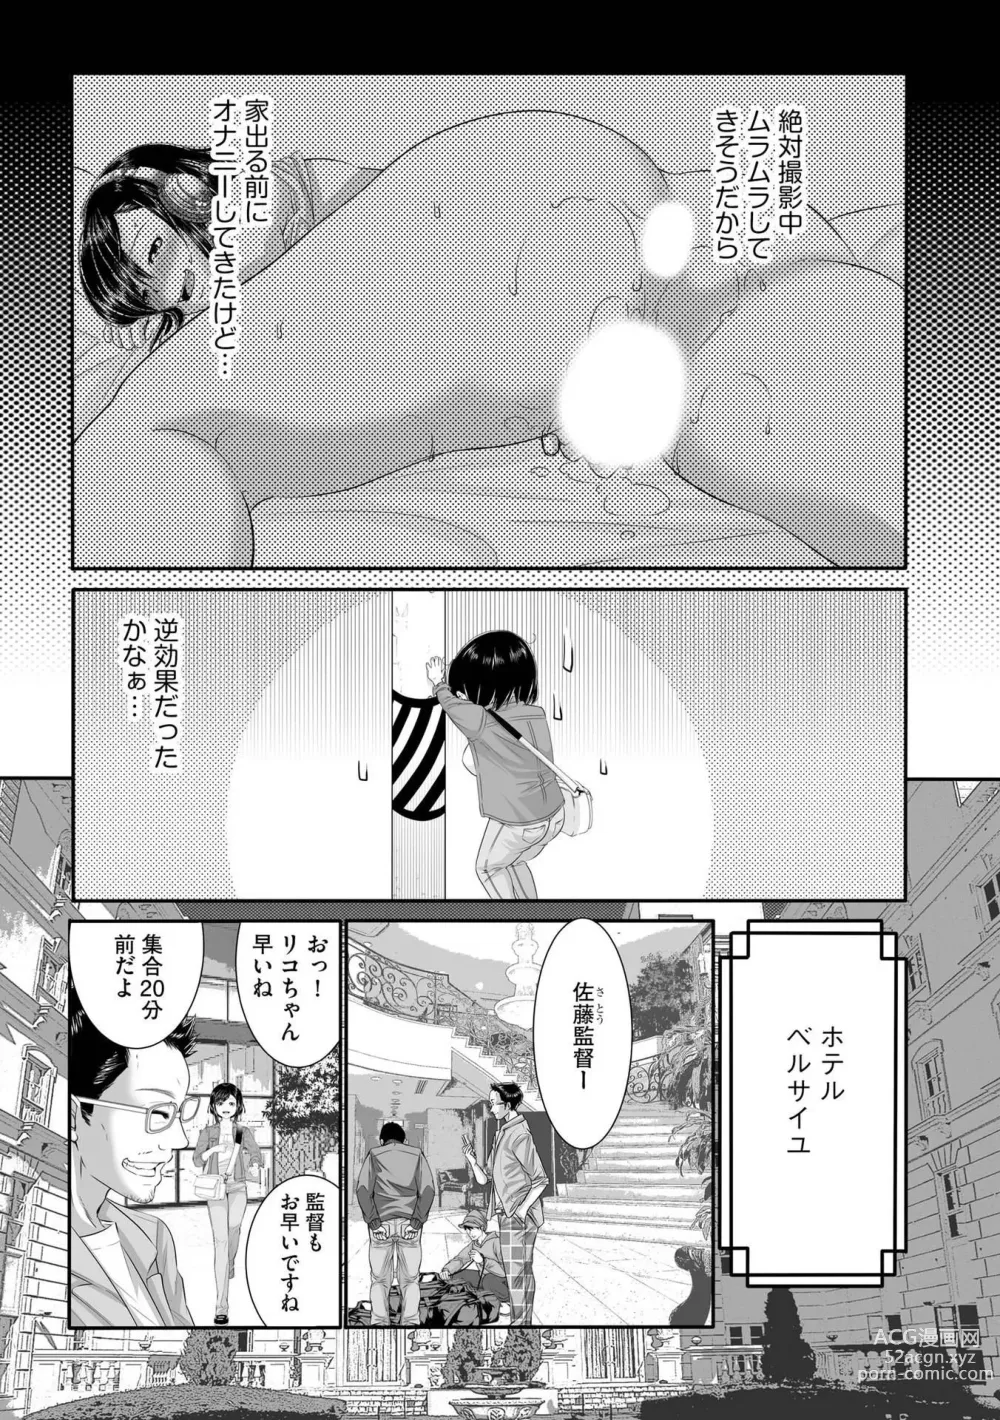 Page 6 of manga LoveHo Seisouin o Shiteita Watashi ga AV Debut o Shita Riyuu Vol. 2